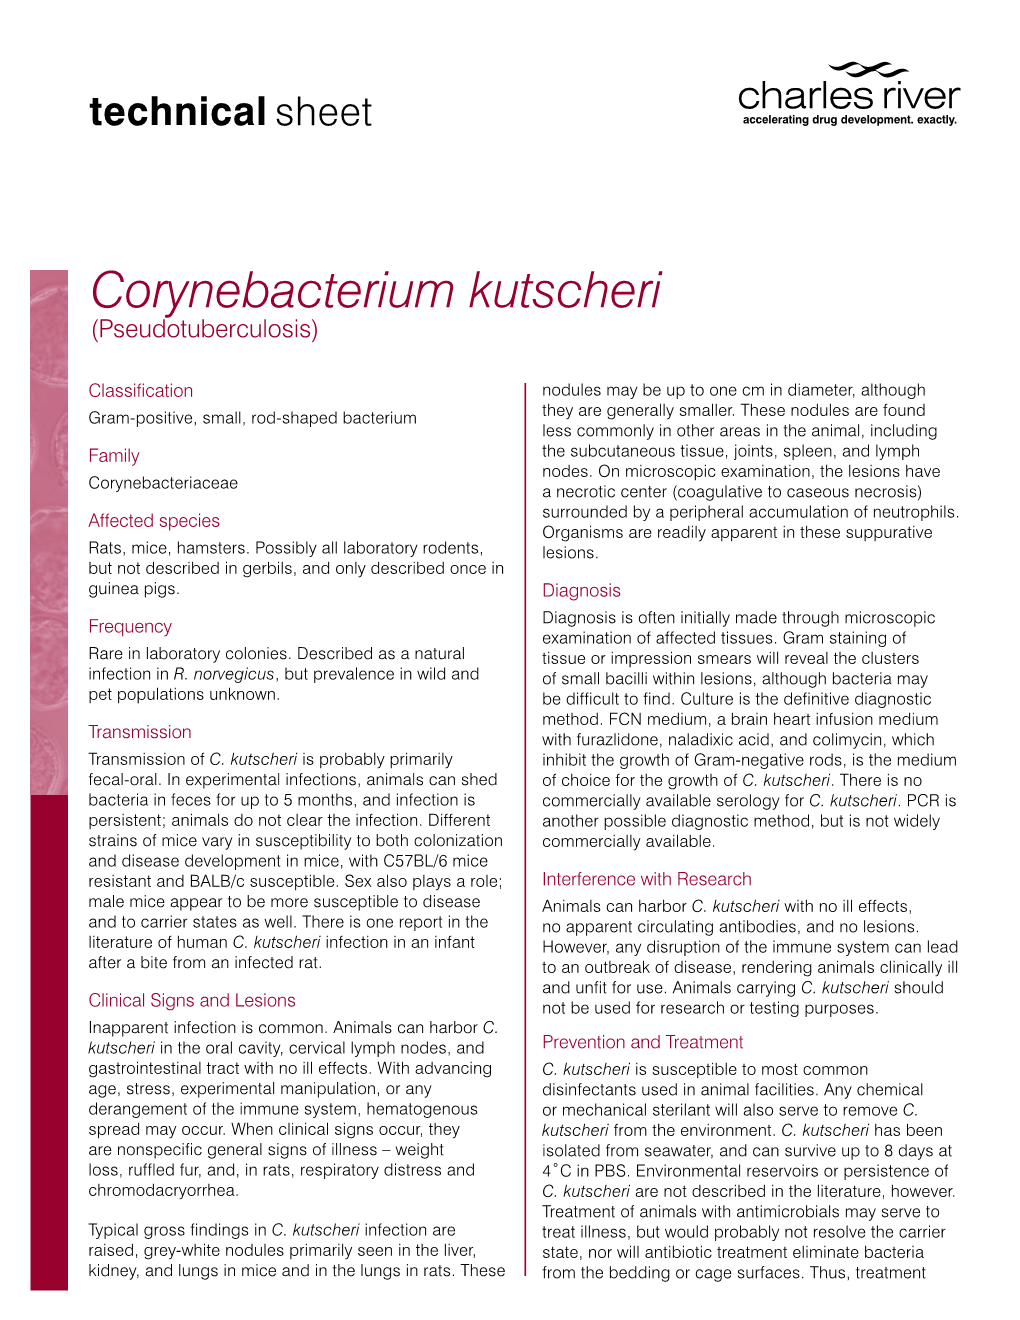 Corynebacterium Kutscheri (Pseudotuberculosis)